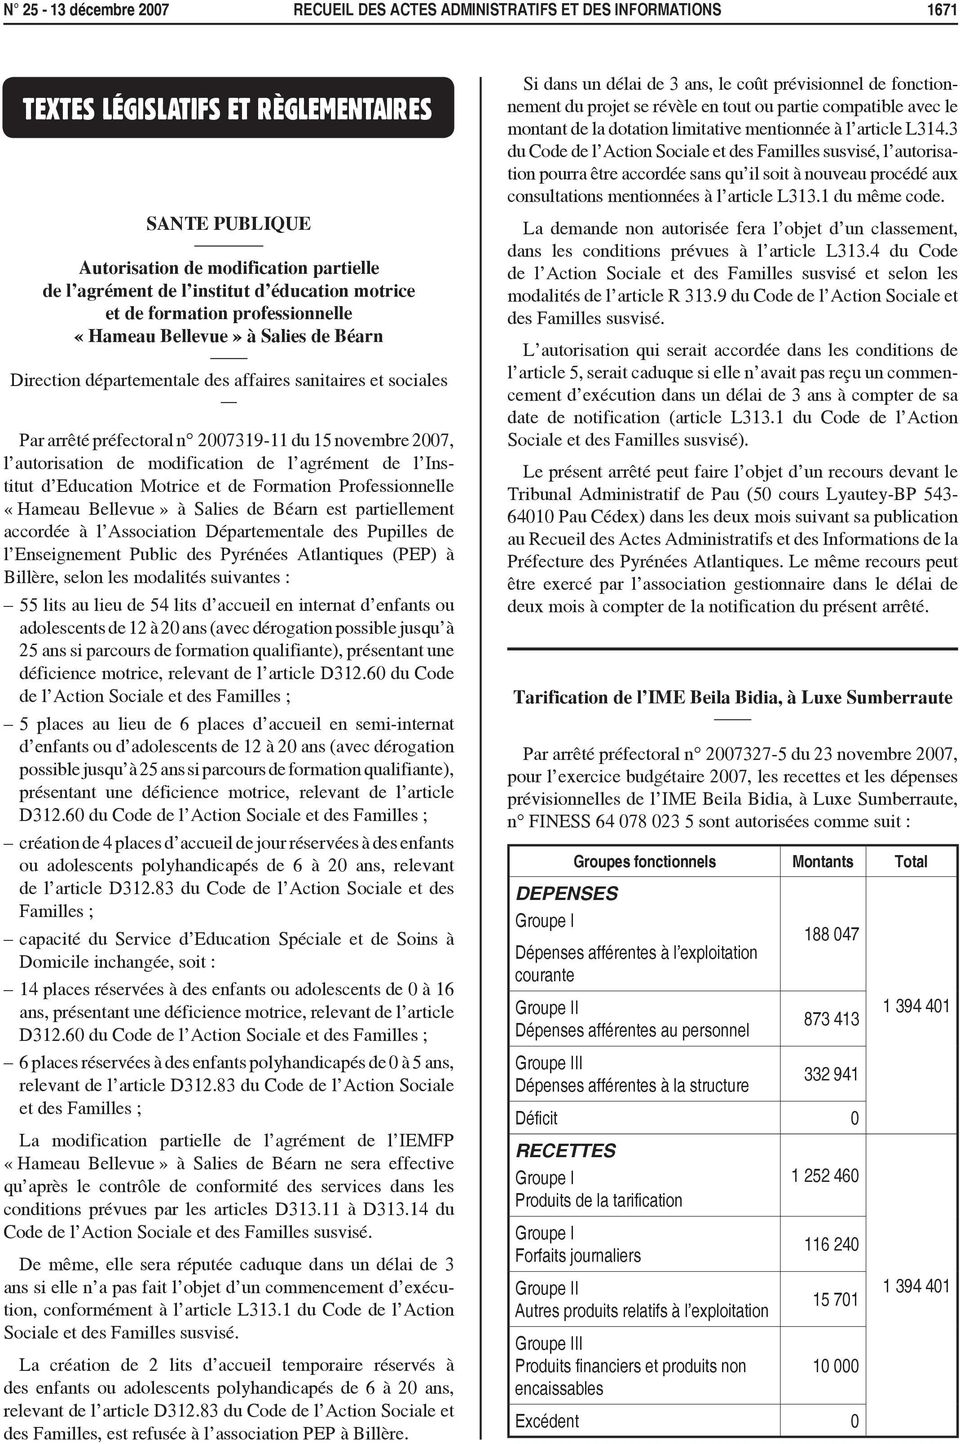 2007, l autorisation de modification de l agrément de l Institut d Education Motrice et de Formation Professionnelle «Hameau Bellevue» à Salies de Béarn est partiellement accordée à l Association